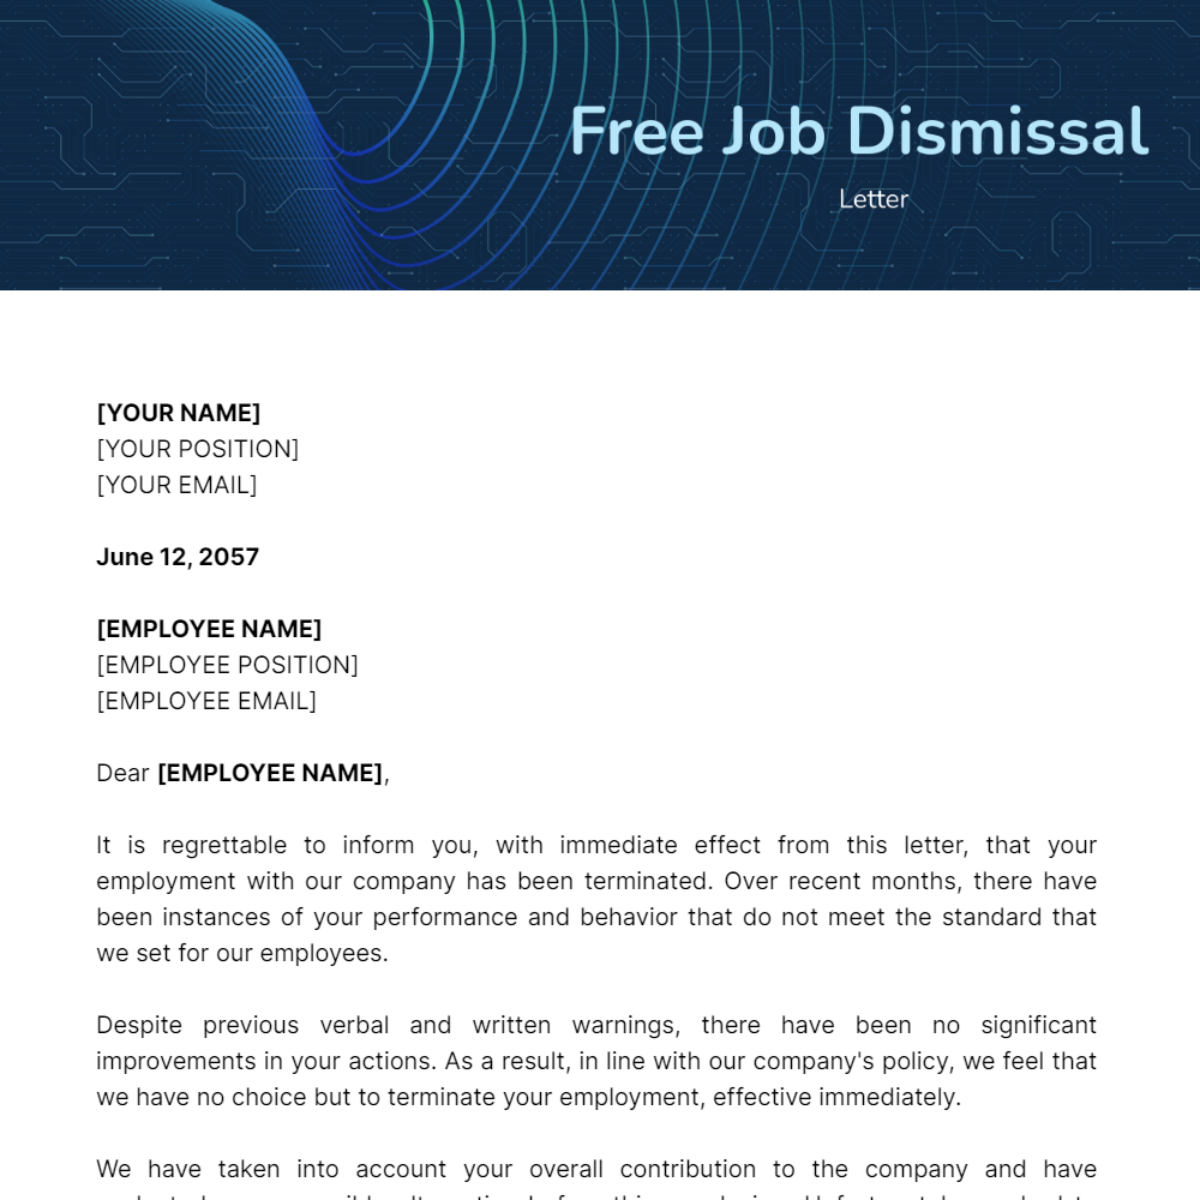 Job Dismissal Letter Template